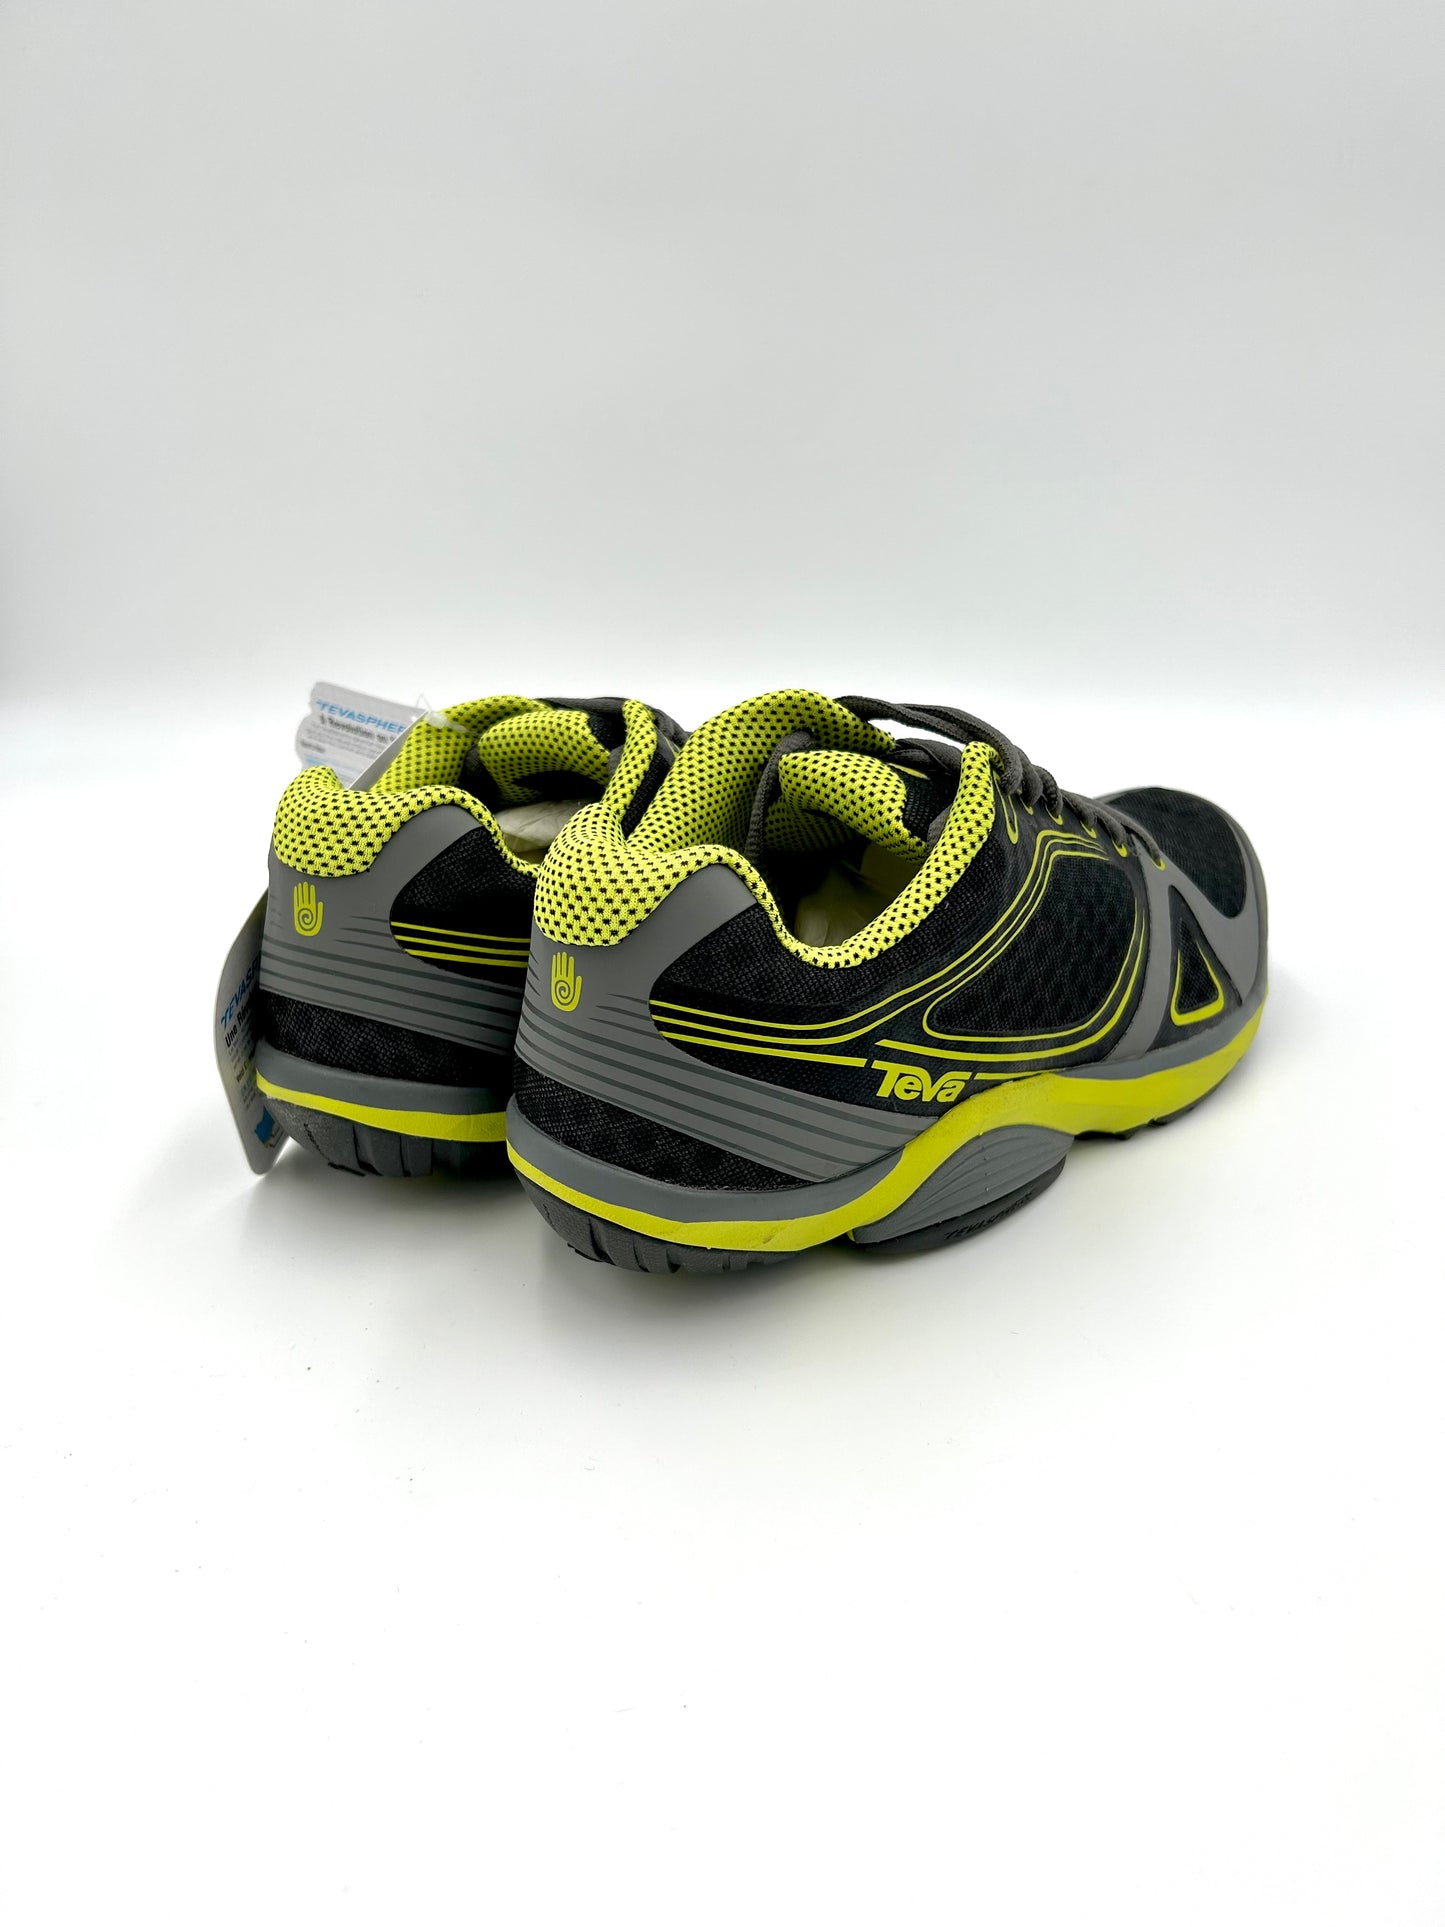 Teva - Sphere Speed Sneakers Shoes - Green and grey - Teva